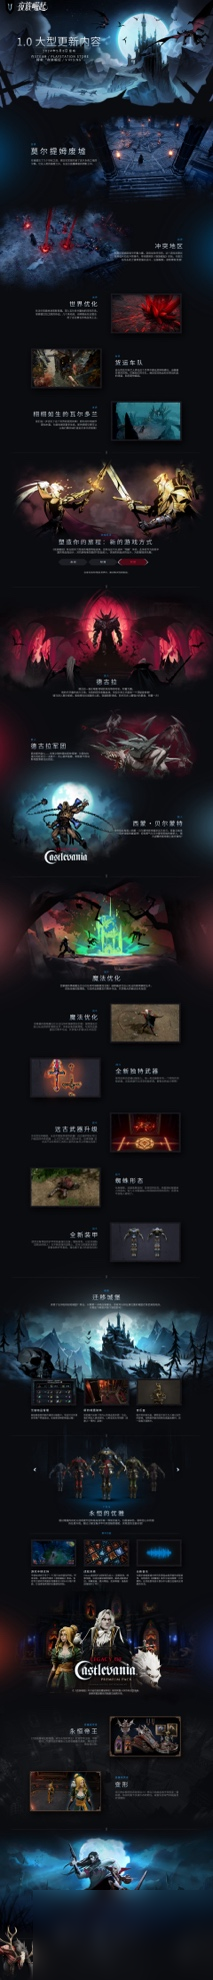 吸血鬼主题生存游戏《夜族崛起》发布全新区域首个实机预告片  莫尔提姆废墟